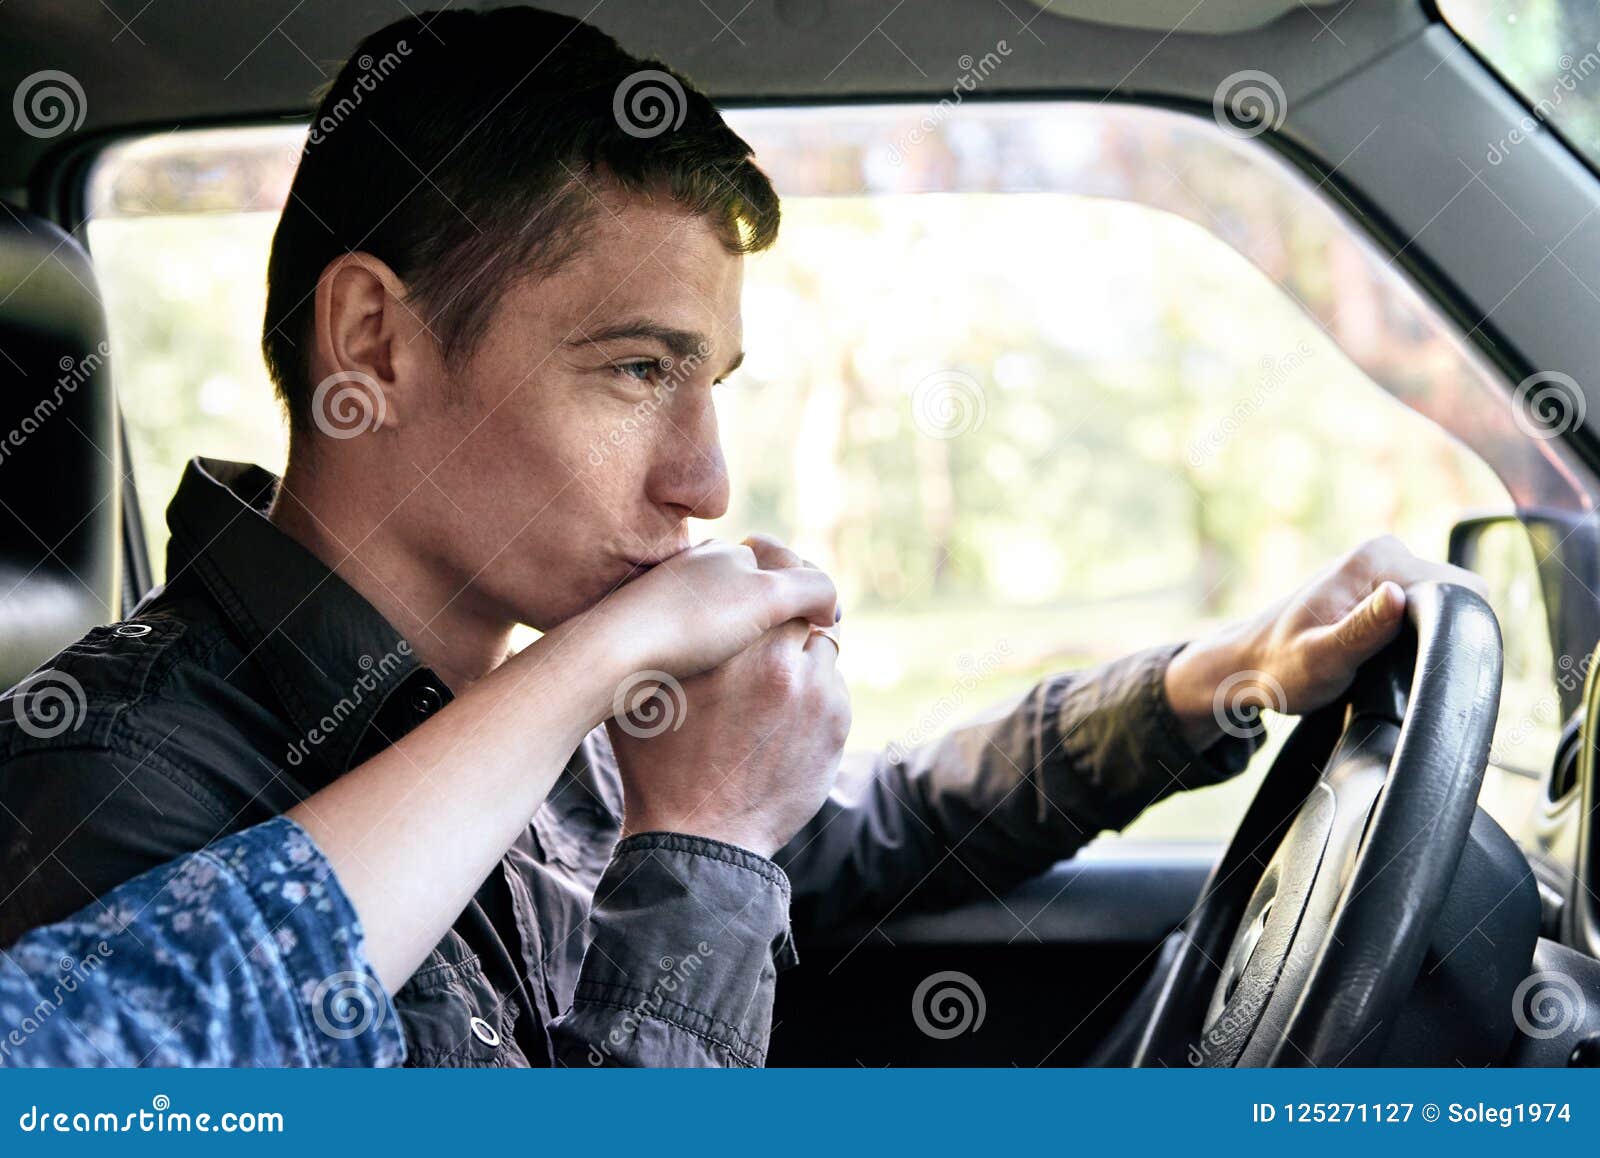 men-sitting-car-kissing-girl-s-hand-romantic-feelings-love-man-sitting-car-kissing-girl-s-hand-romantic-125271127.jpg